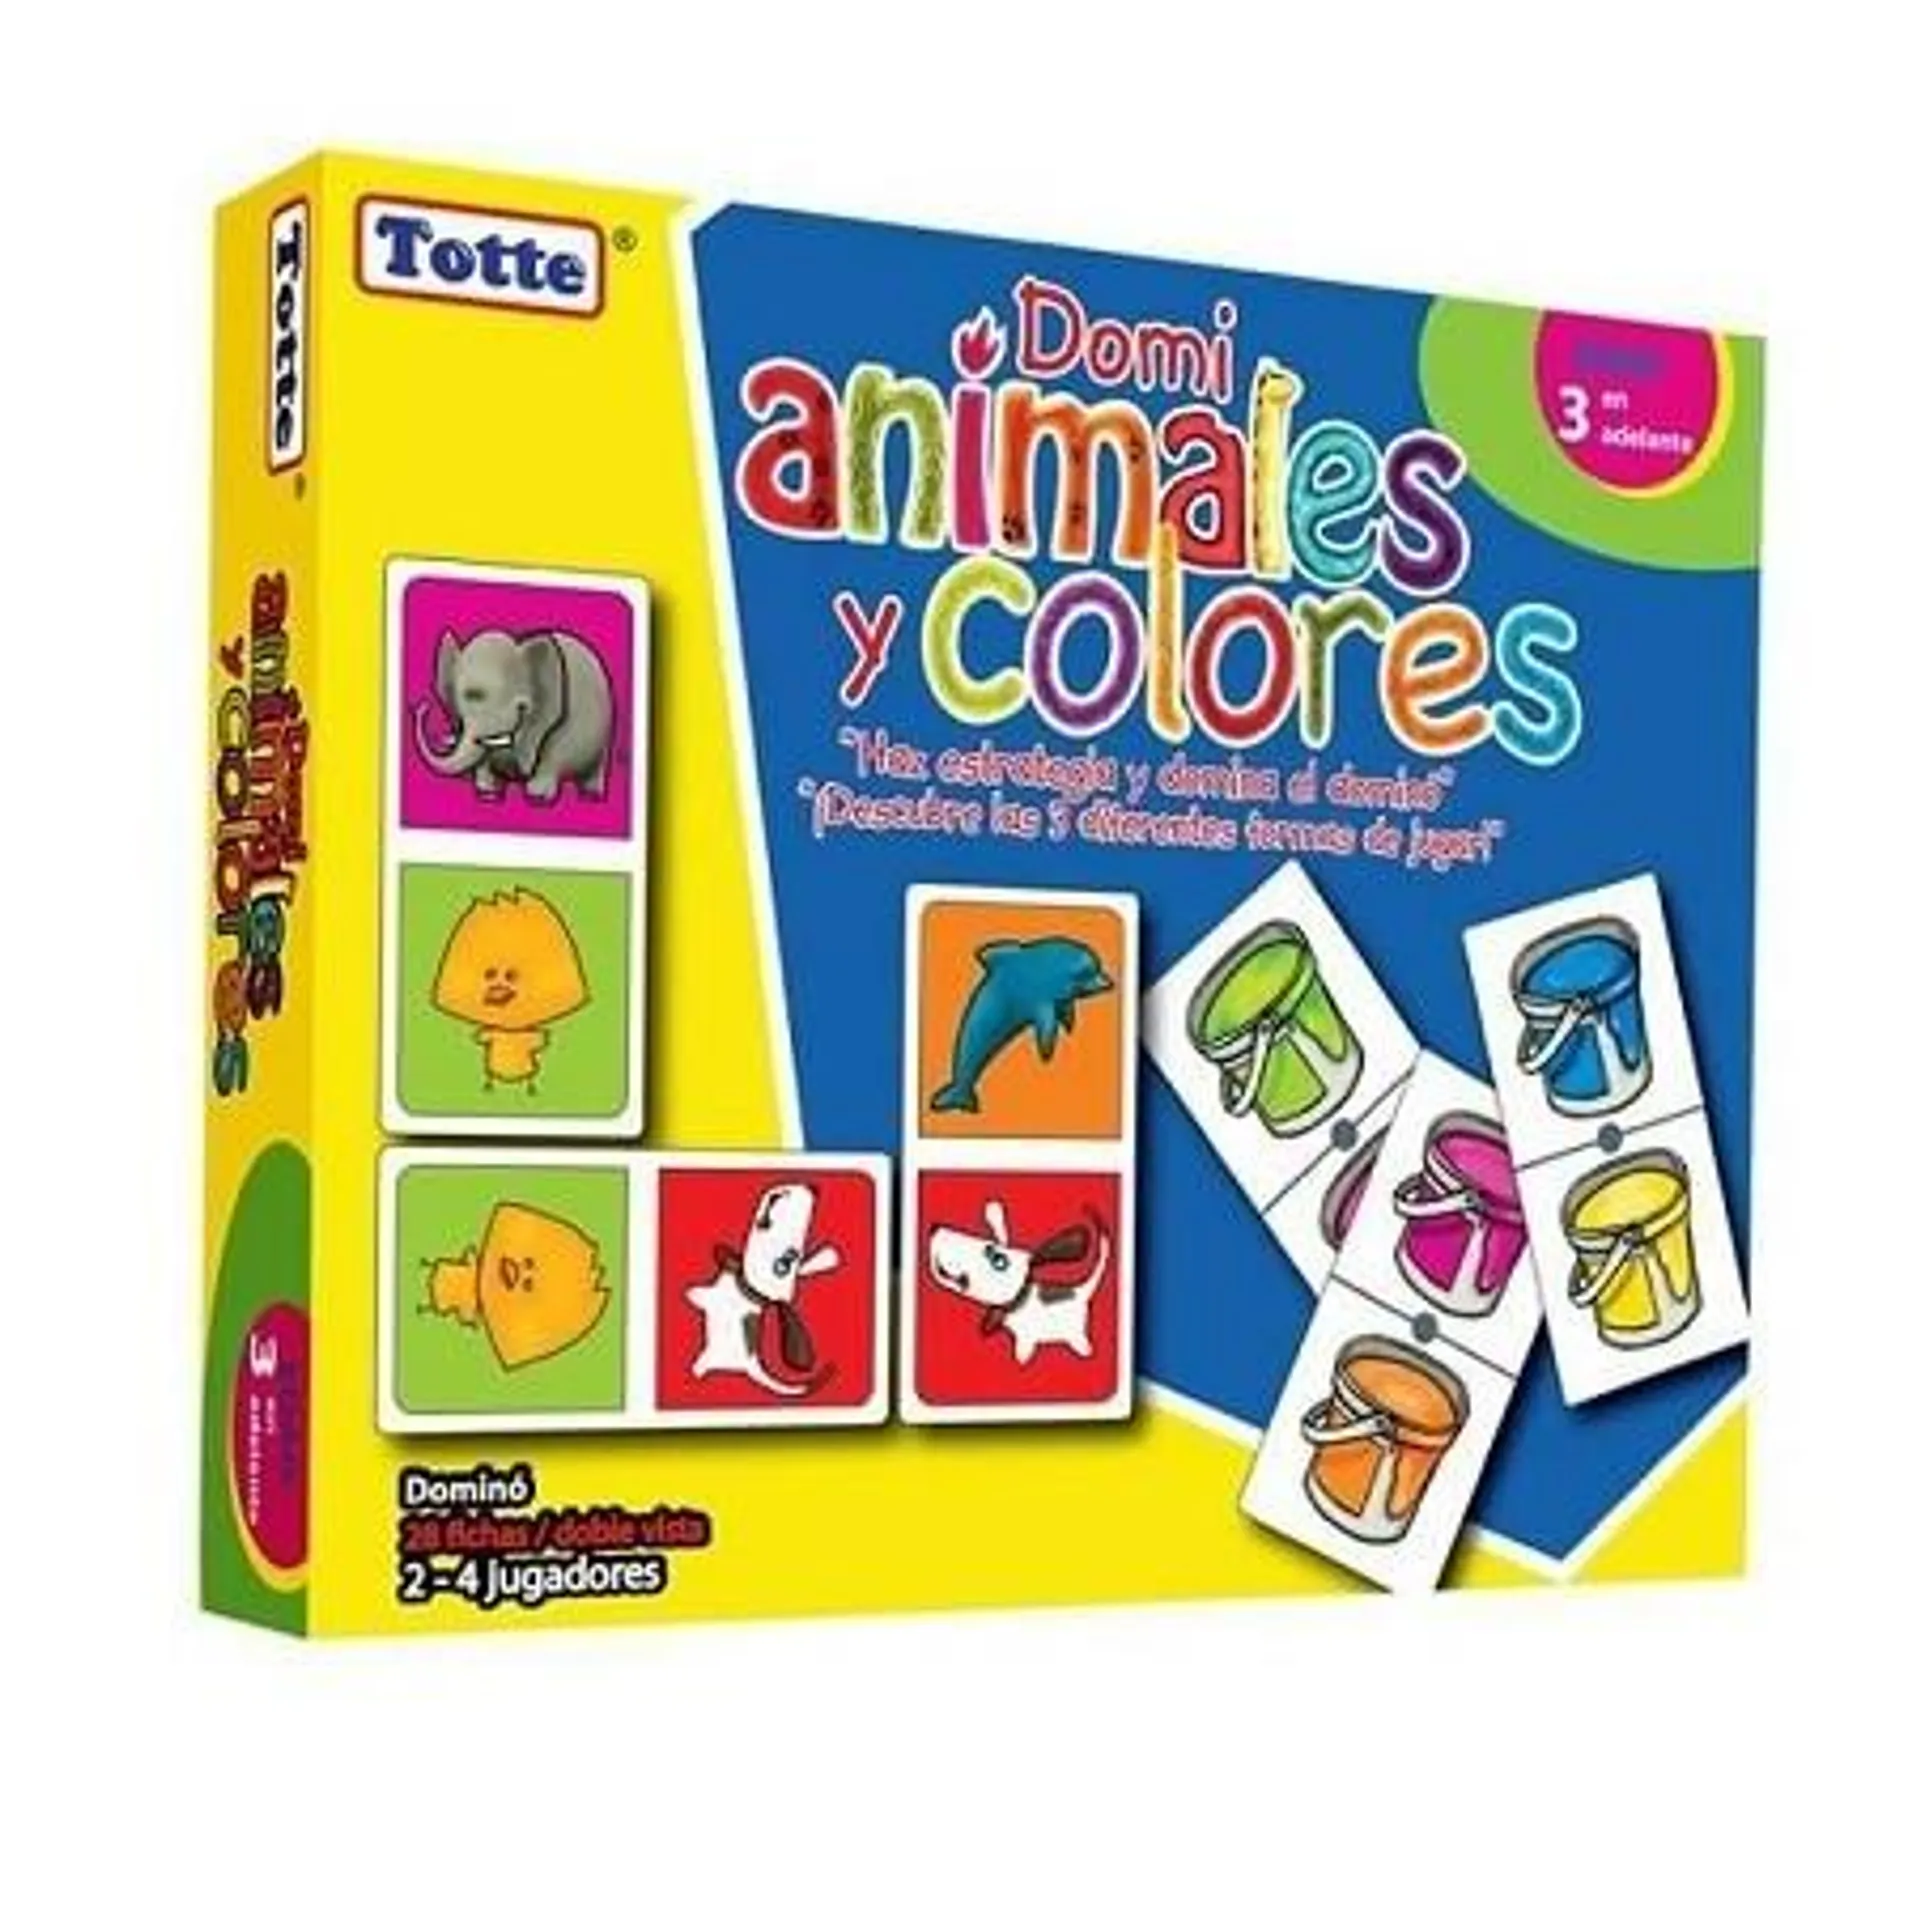 Domino animales y colores